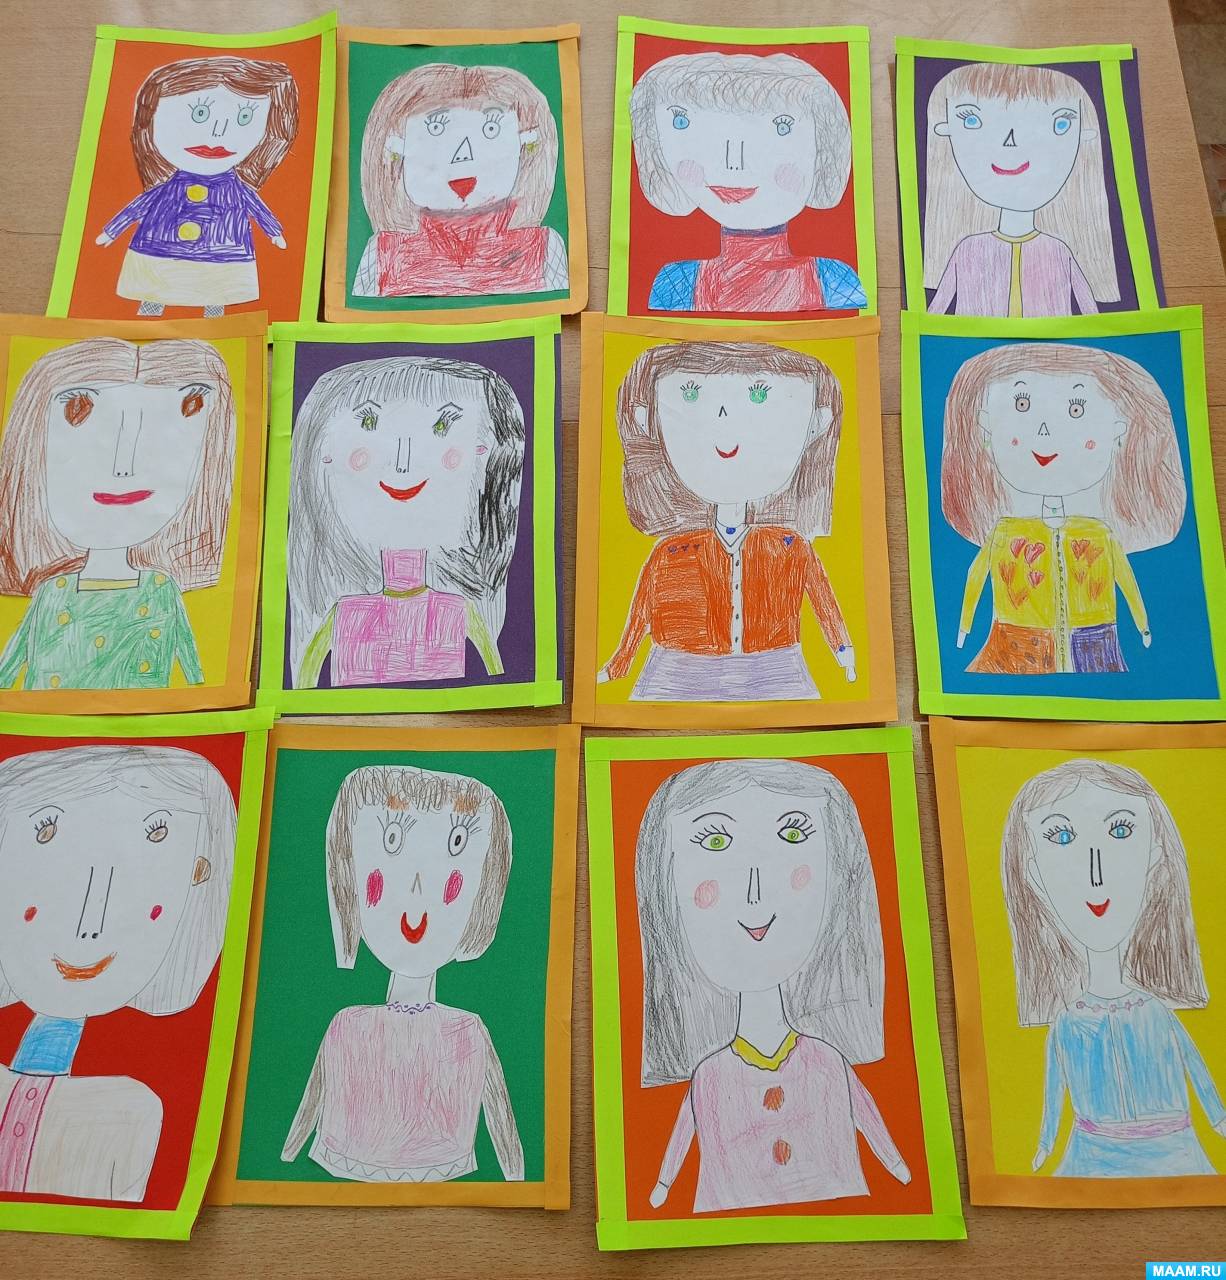 Мастер-класс по рисованию «Портрет мамы» с элементами аппликации для детей старшего дошкольного возраста ко Дню матери